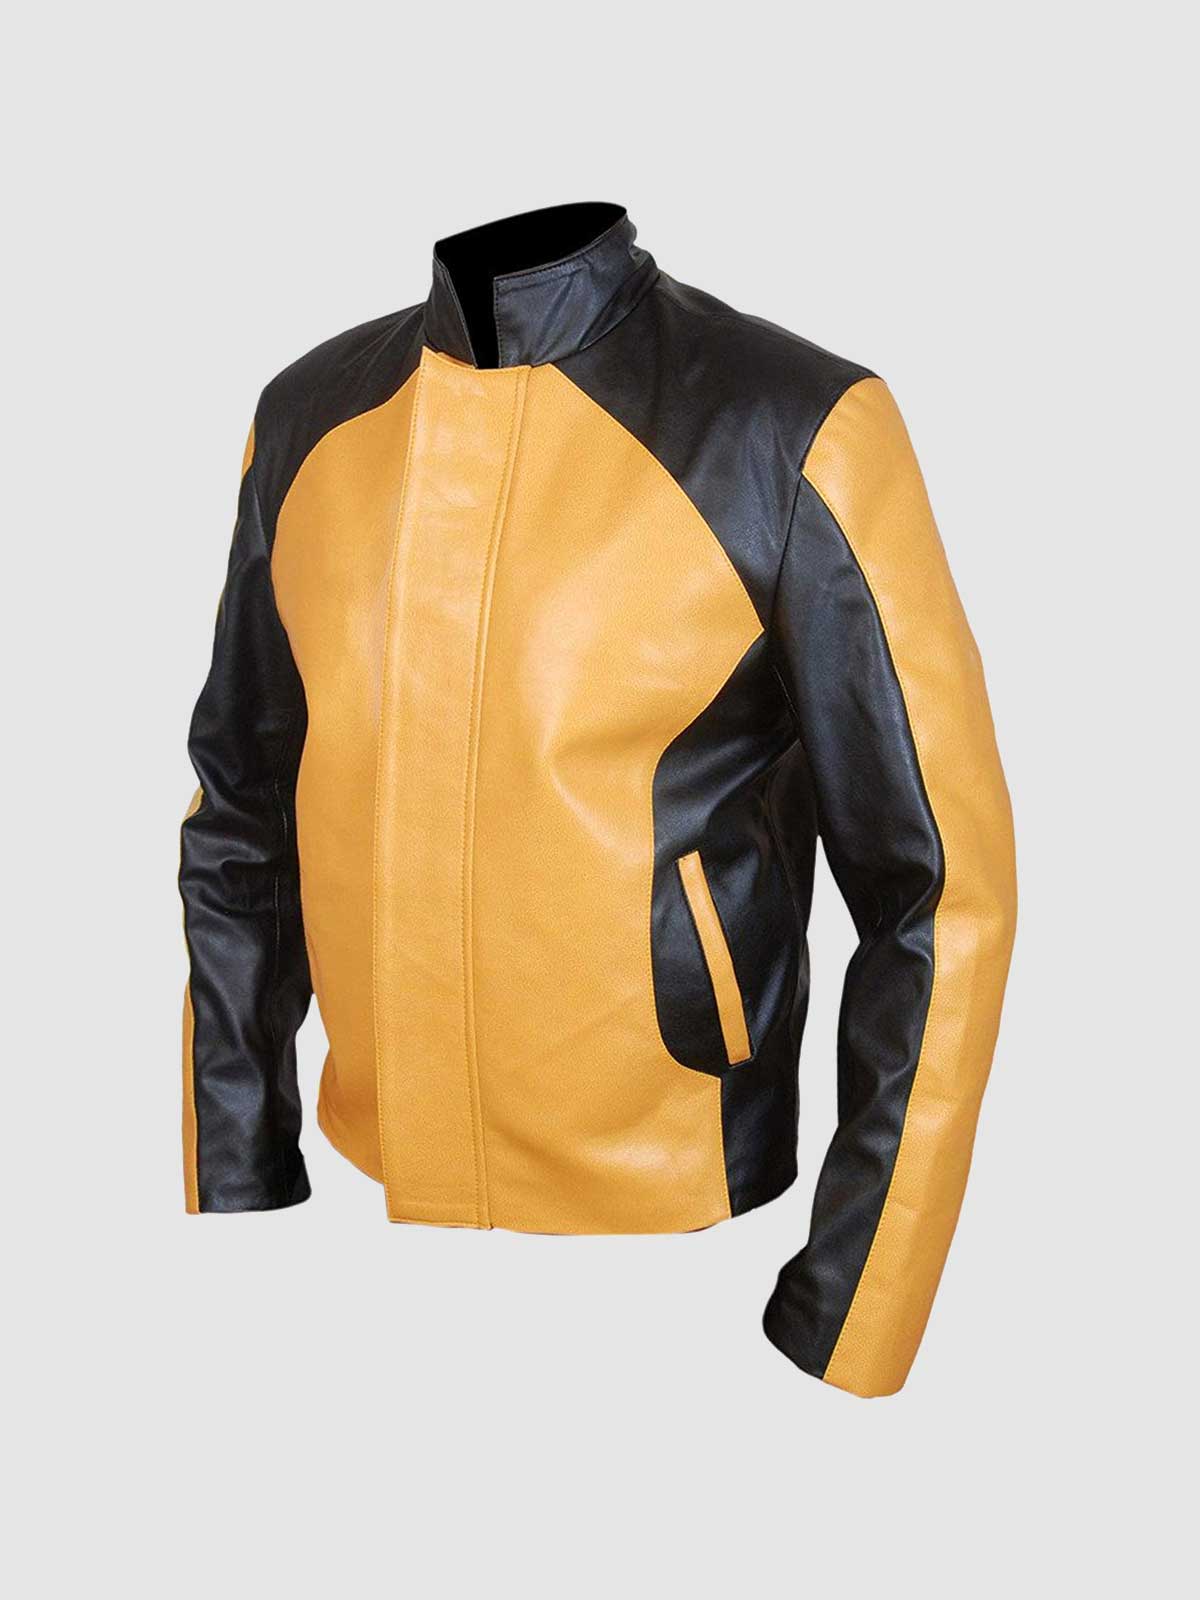 Men\'s Yellow & Black Jacket Leather Jacket Leather Master 